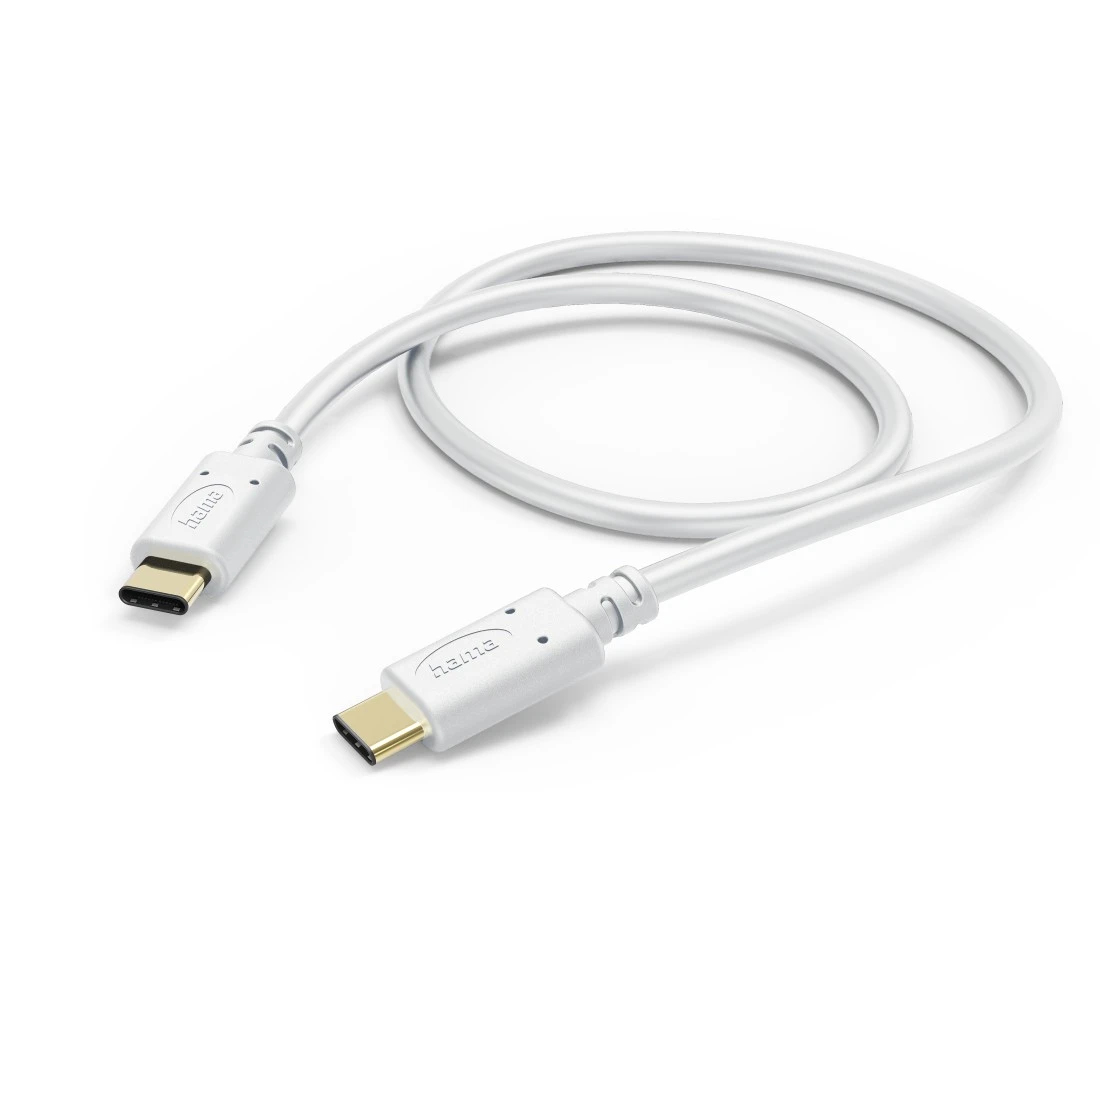 Ladekabel, USB-C - USB-C, 1,5 m, Weiß (201704)